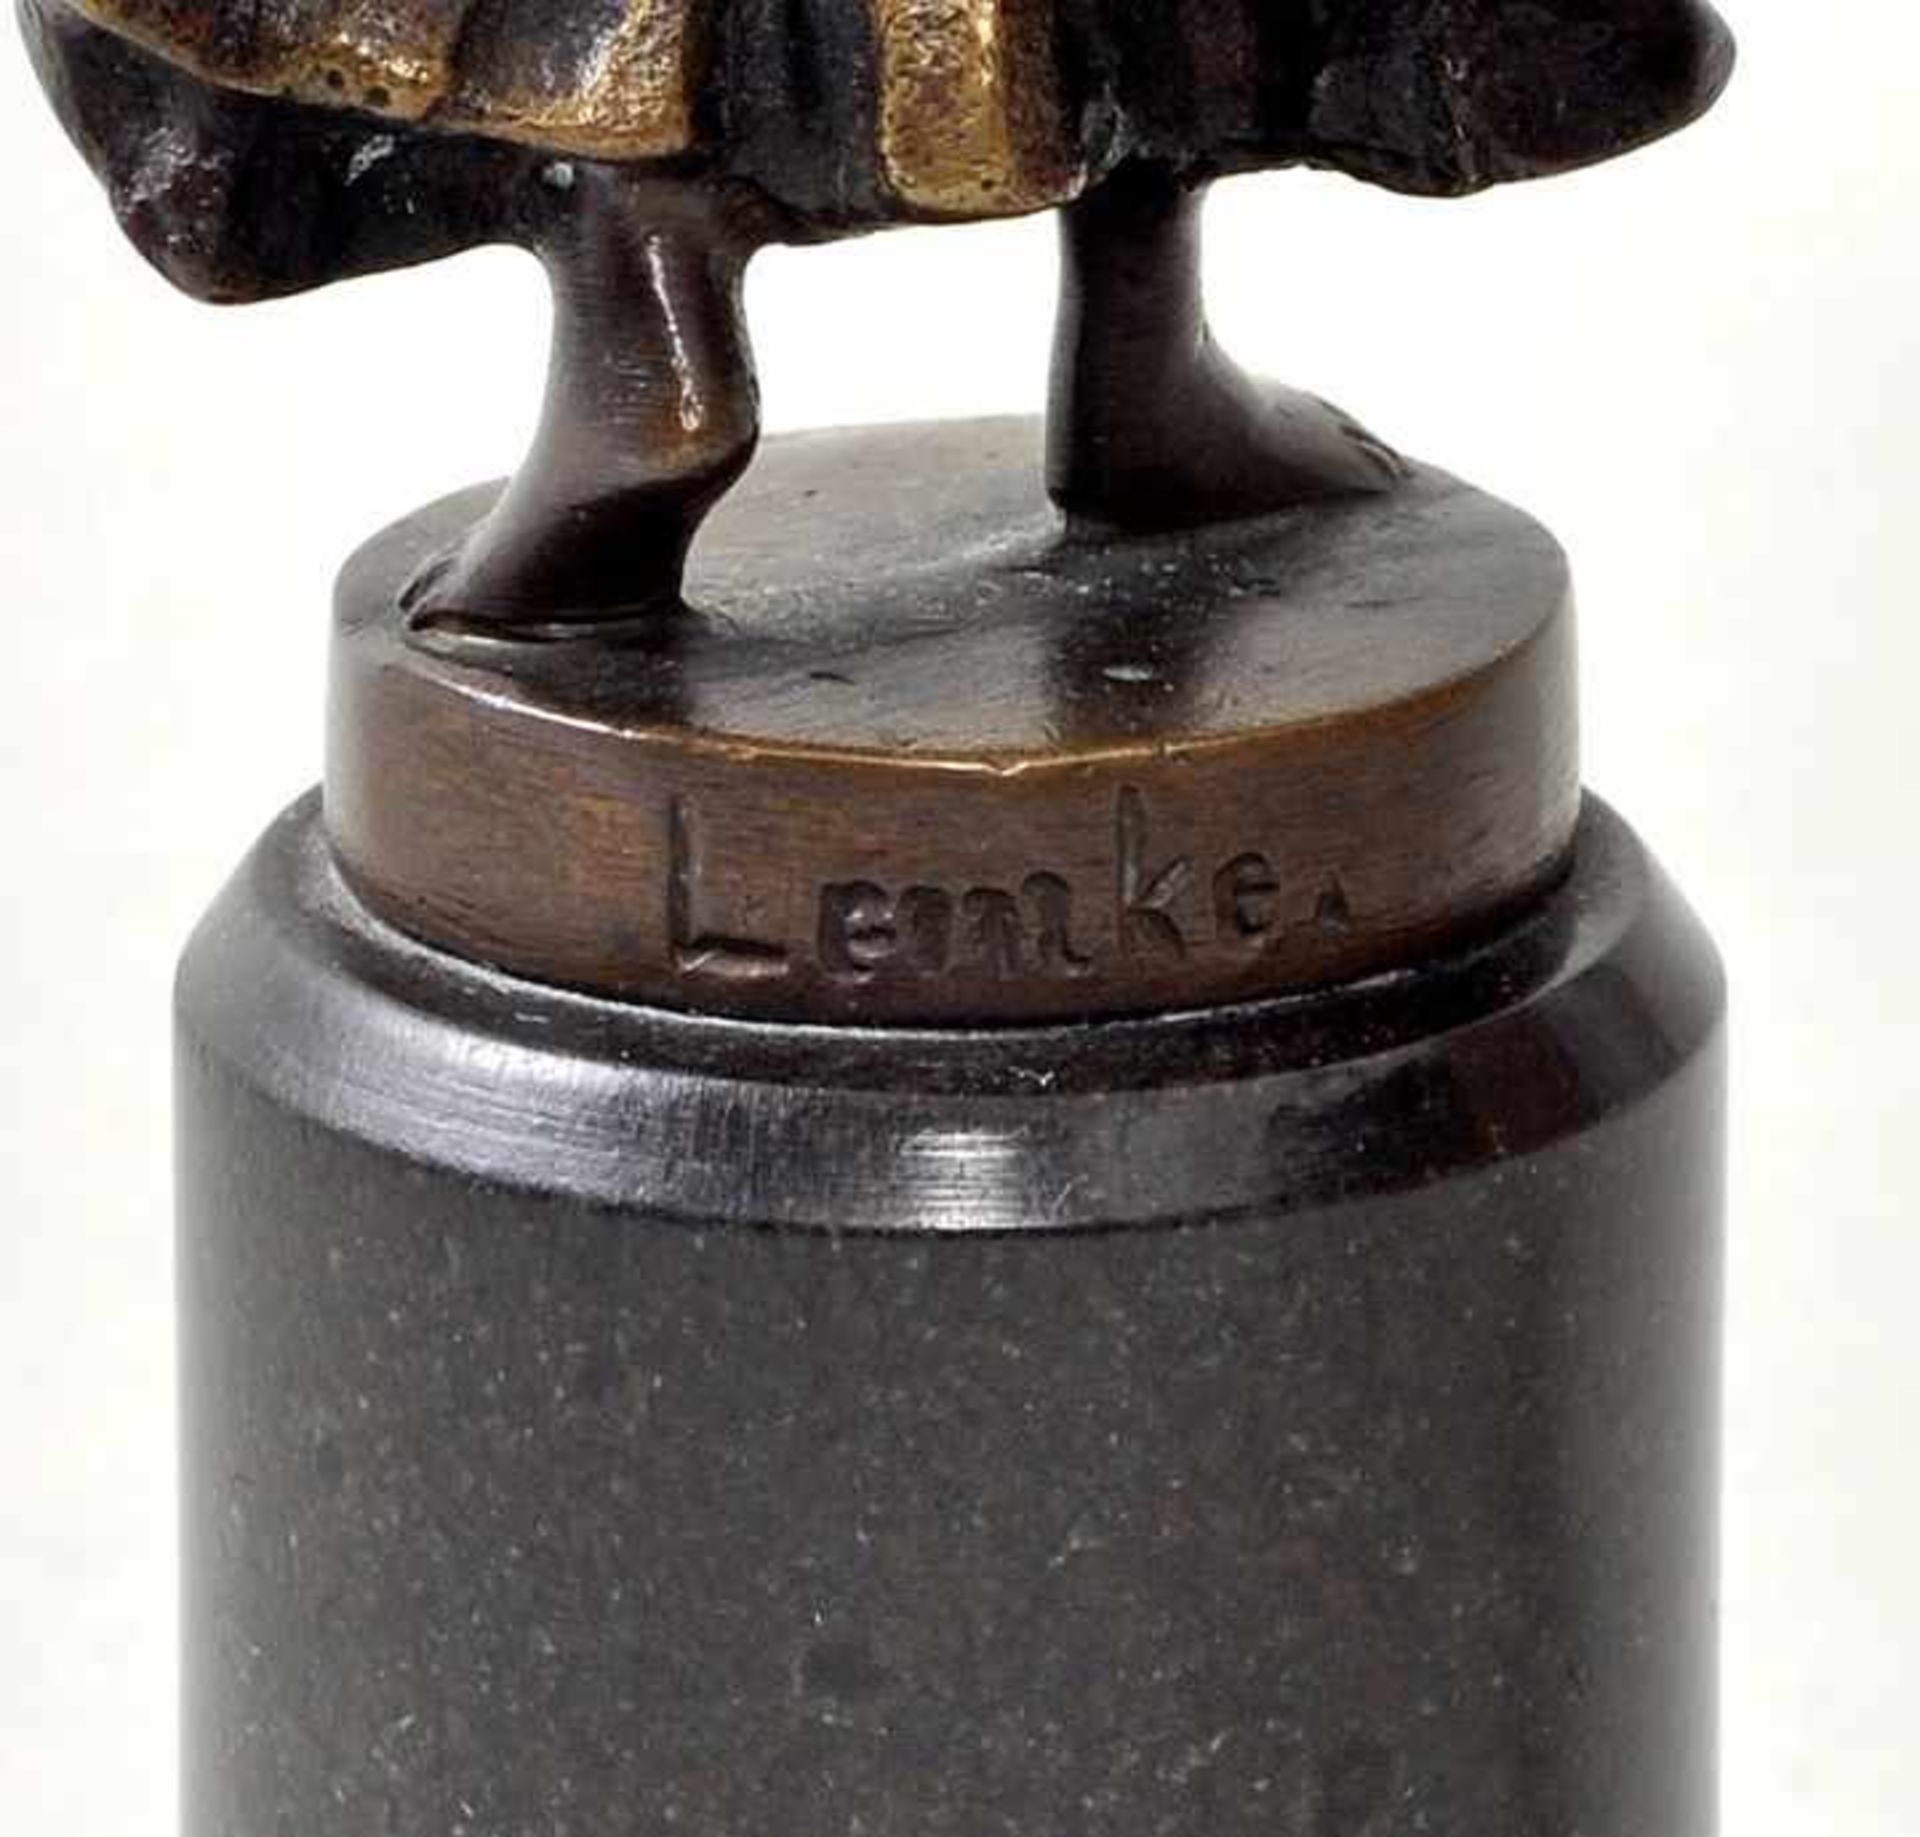 Lemke sign., tätig um 1900 Jugendstilpetschaft/ Kleinbronze Junge Frau mit Wassergefäßen. Bronze, - Bild 3 aus 3